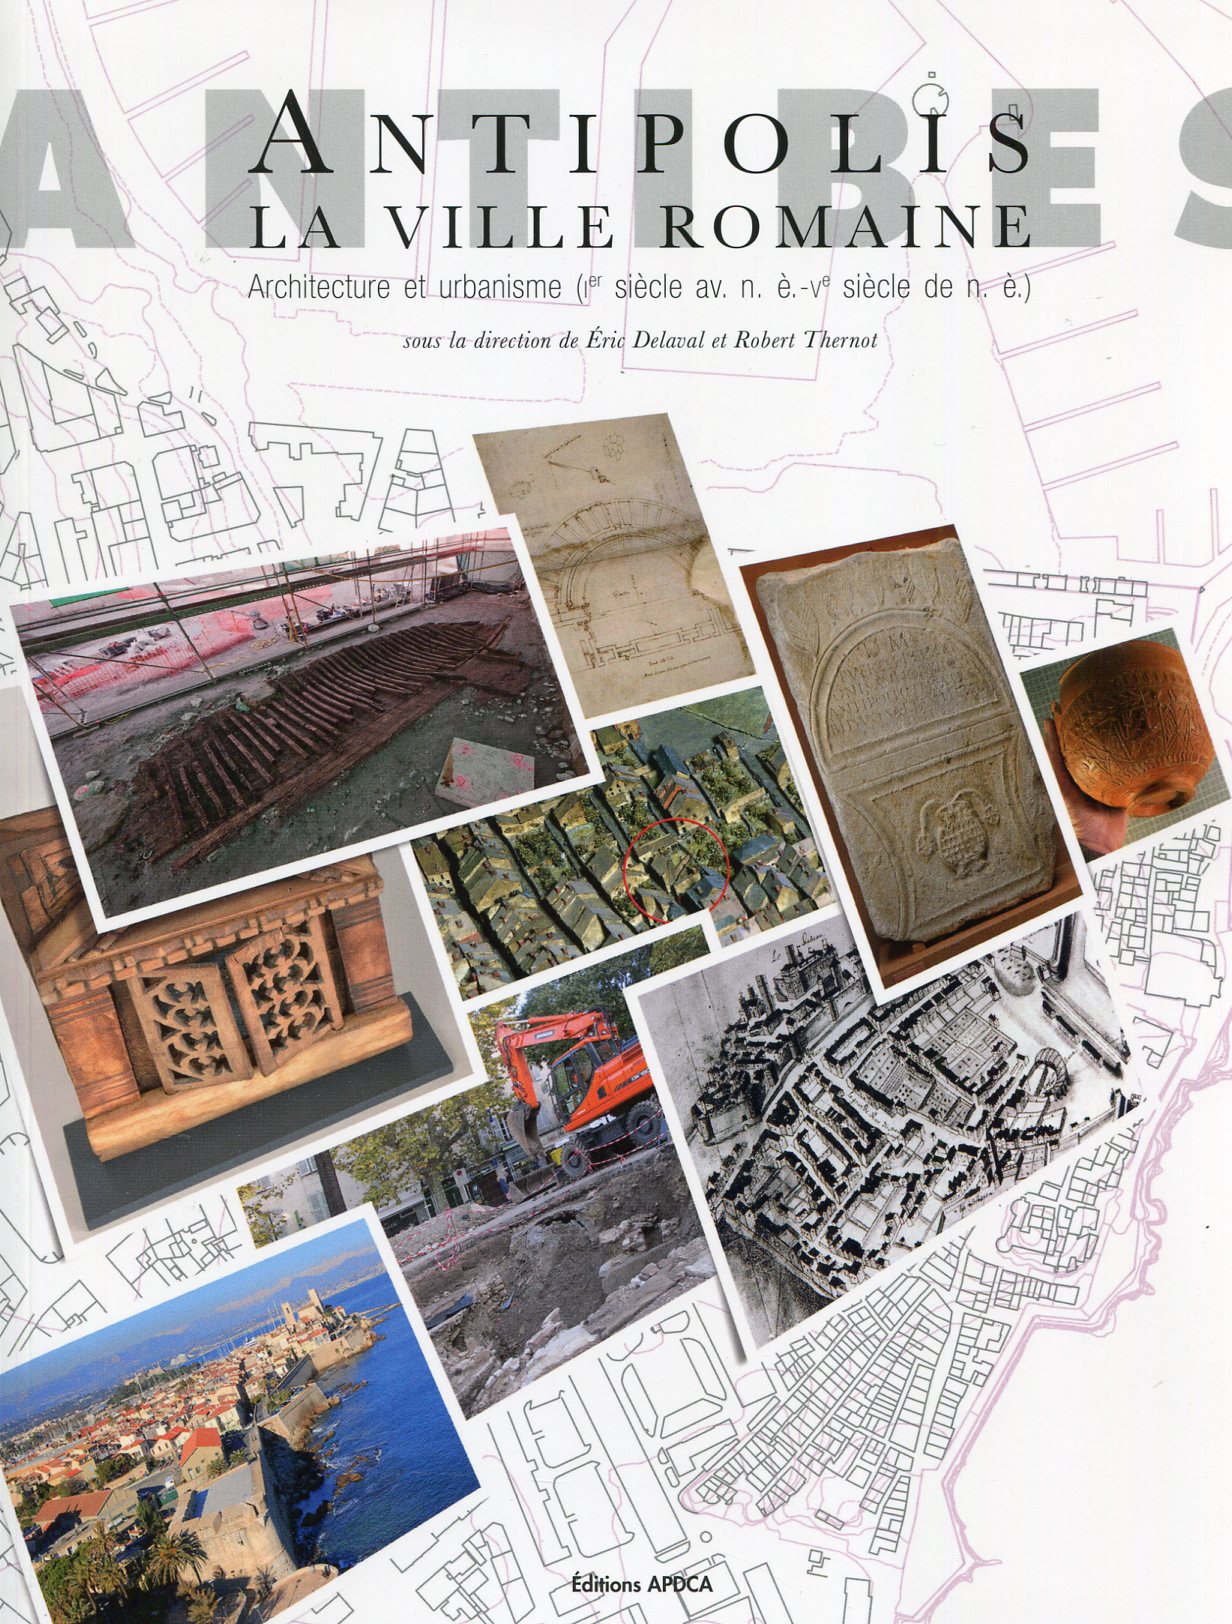 Antipolis. La ville romaine. Architecture et urbanisme (Ier siècle av. n. è. - Ve siècle de n. è.), 2019, 211 p.